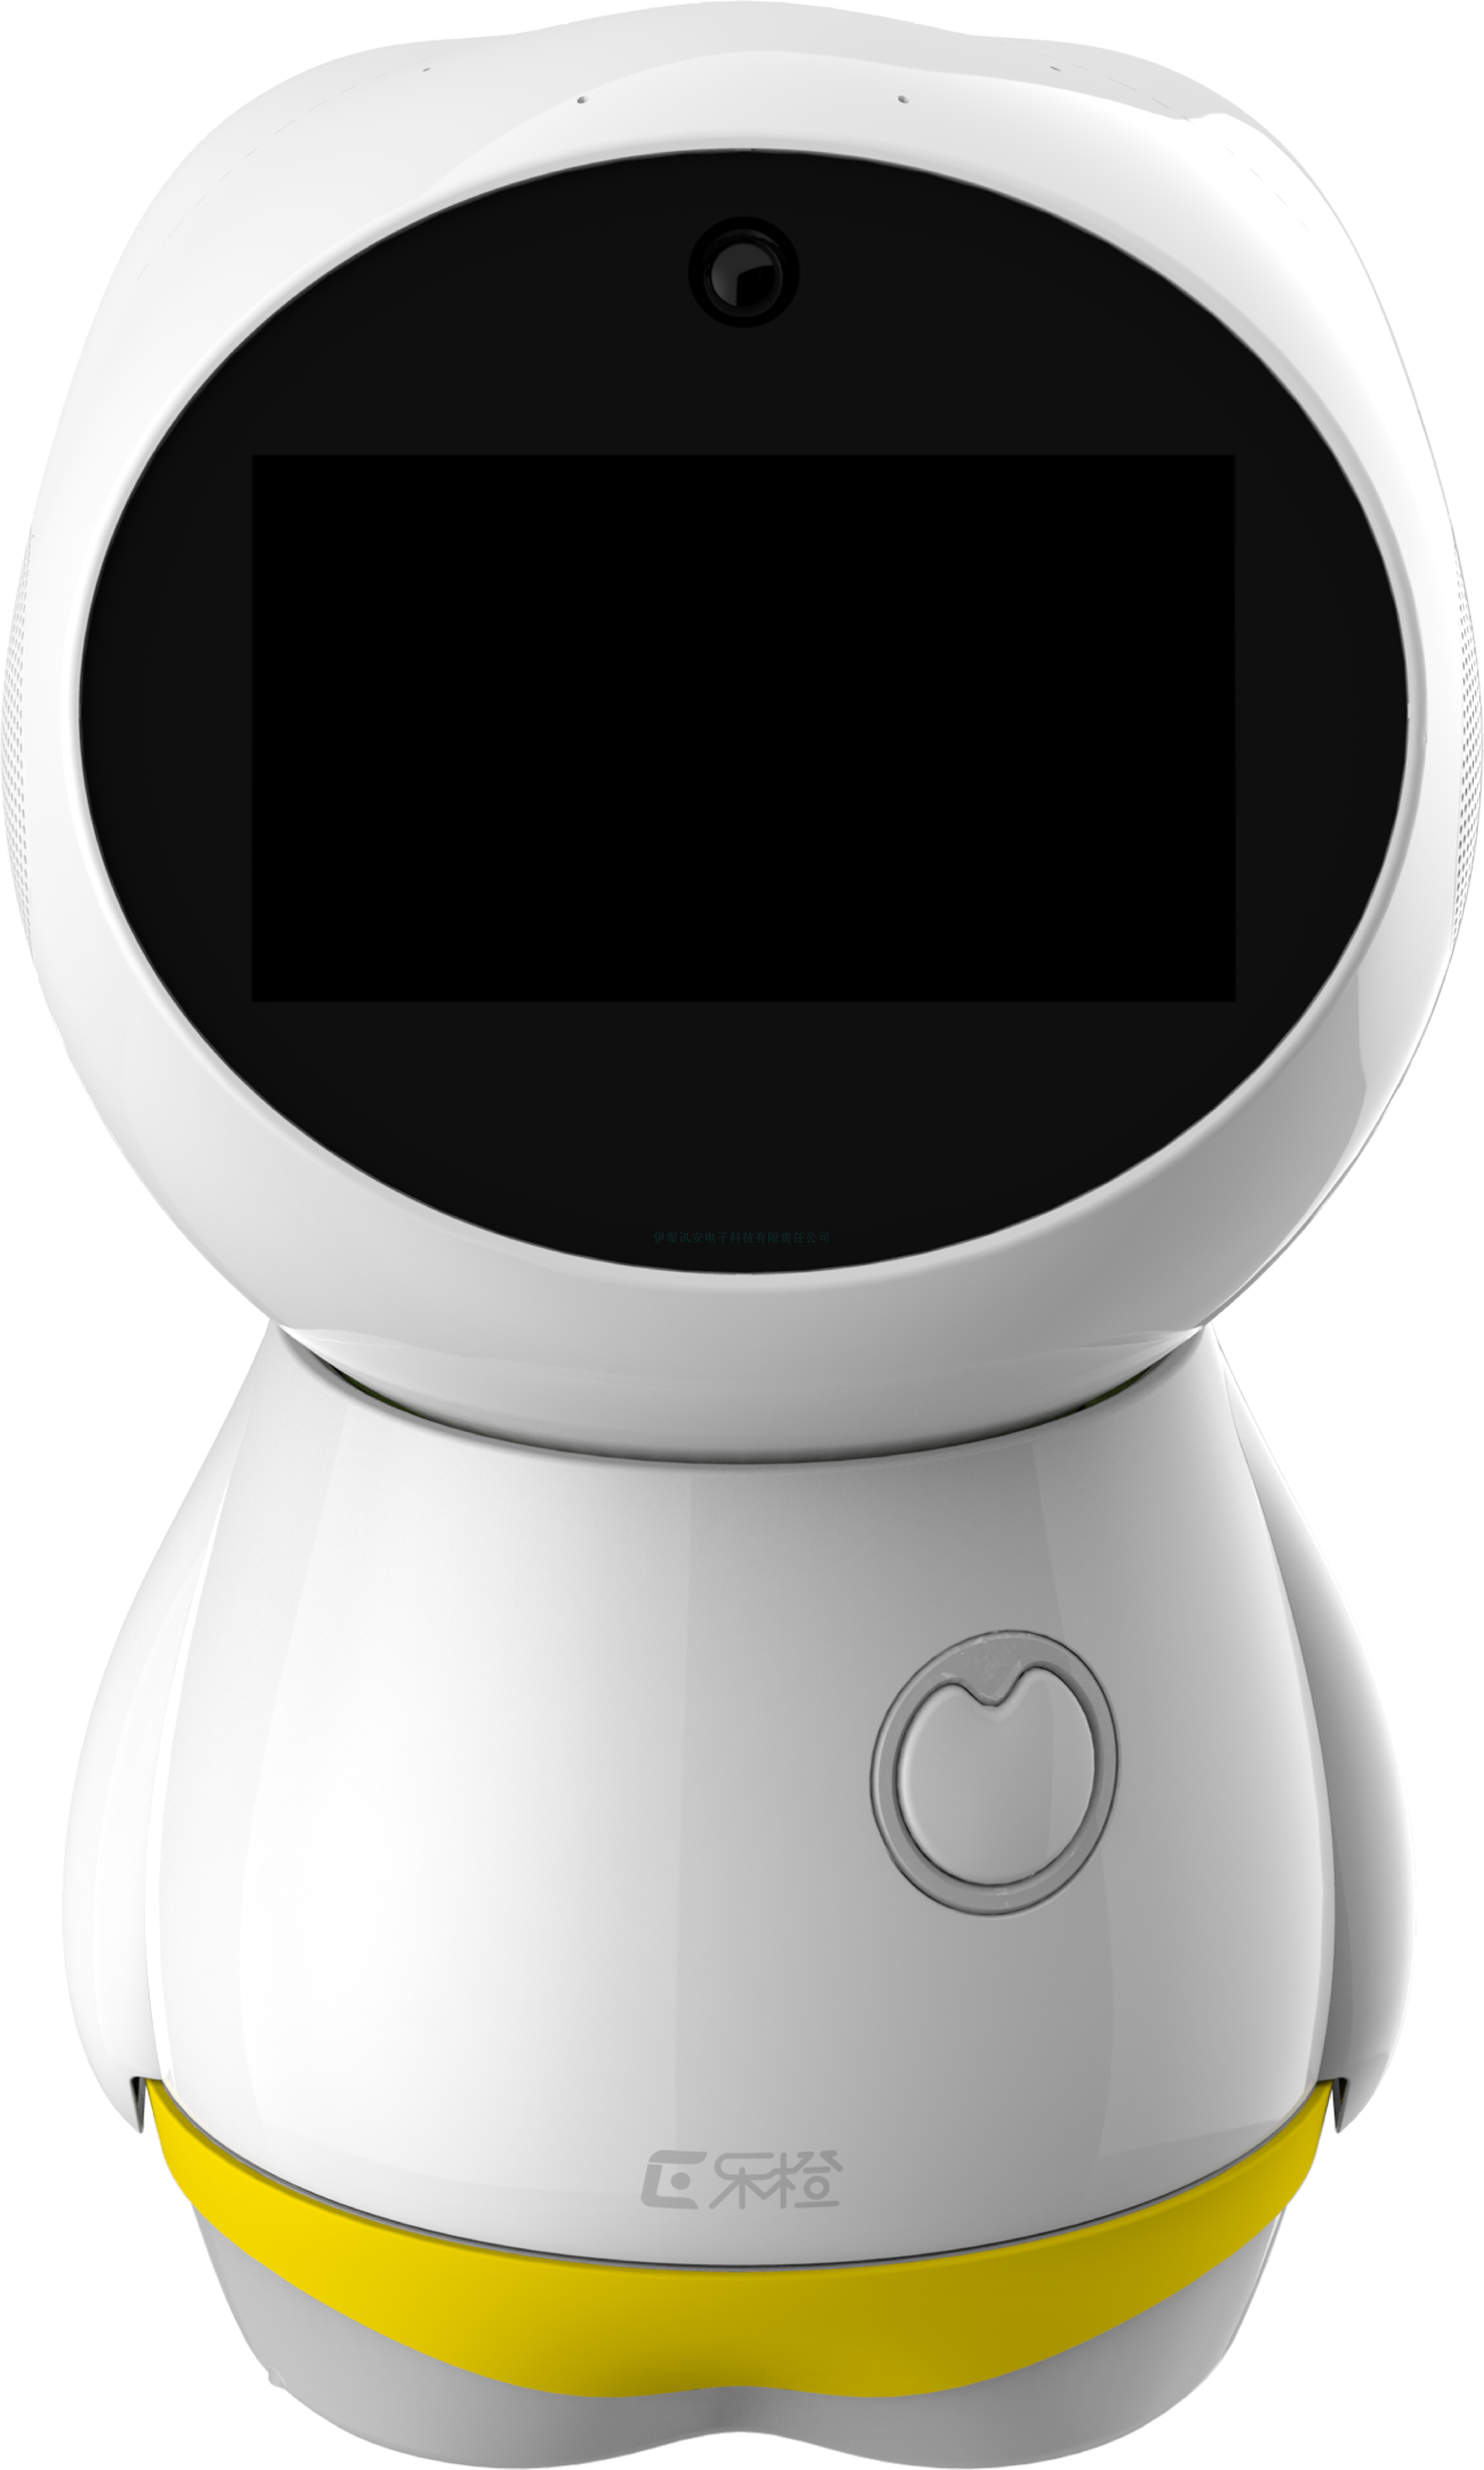 大华乐橙智能育儿机器人,陪伴宝宝成长教育,语音互动,视频电话